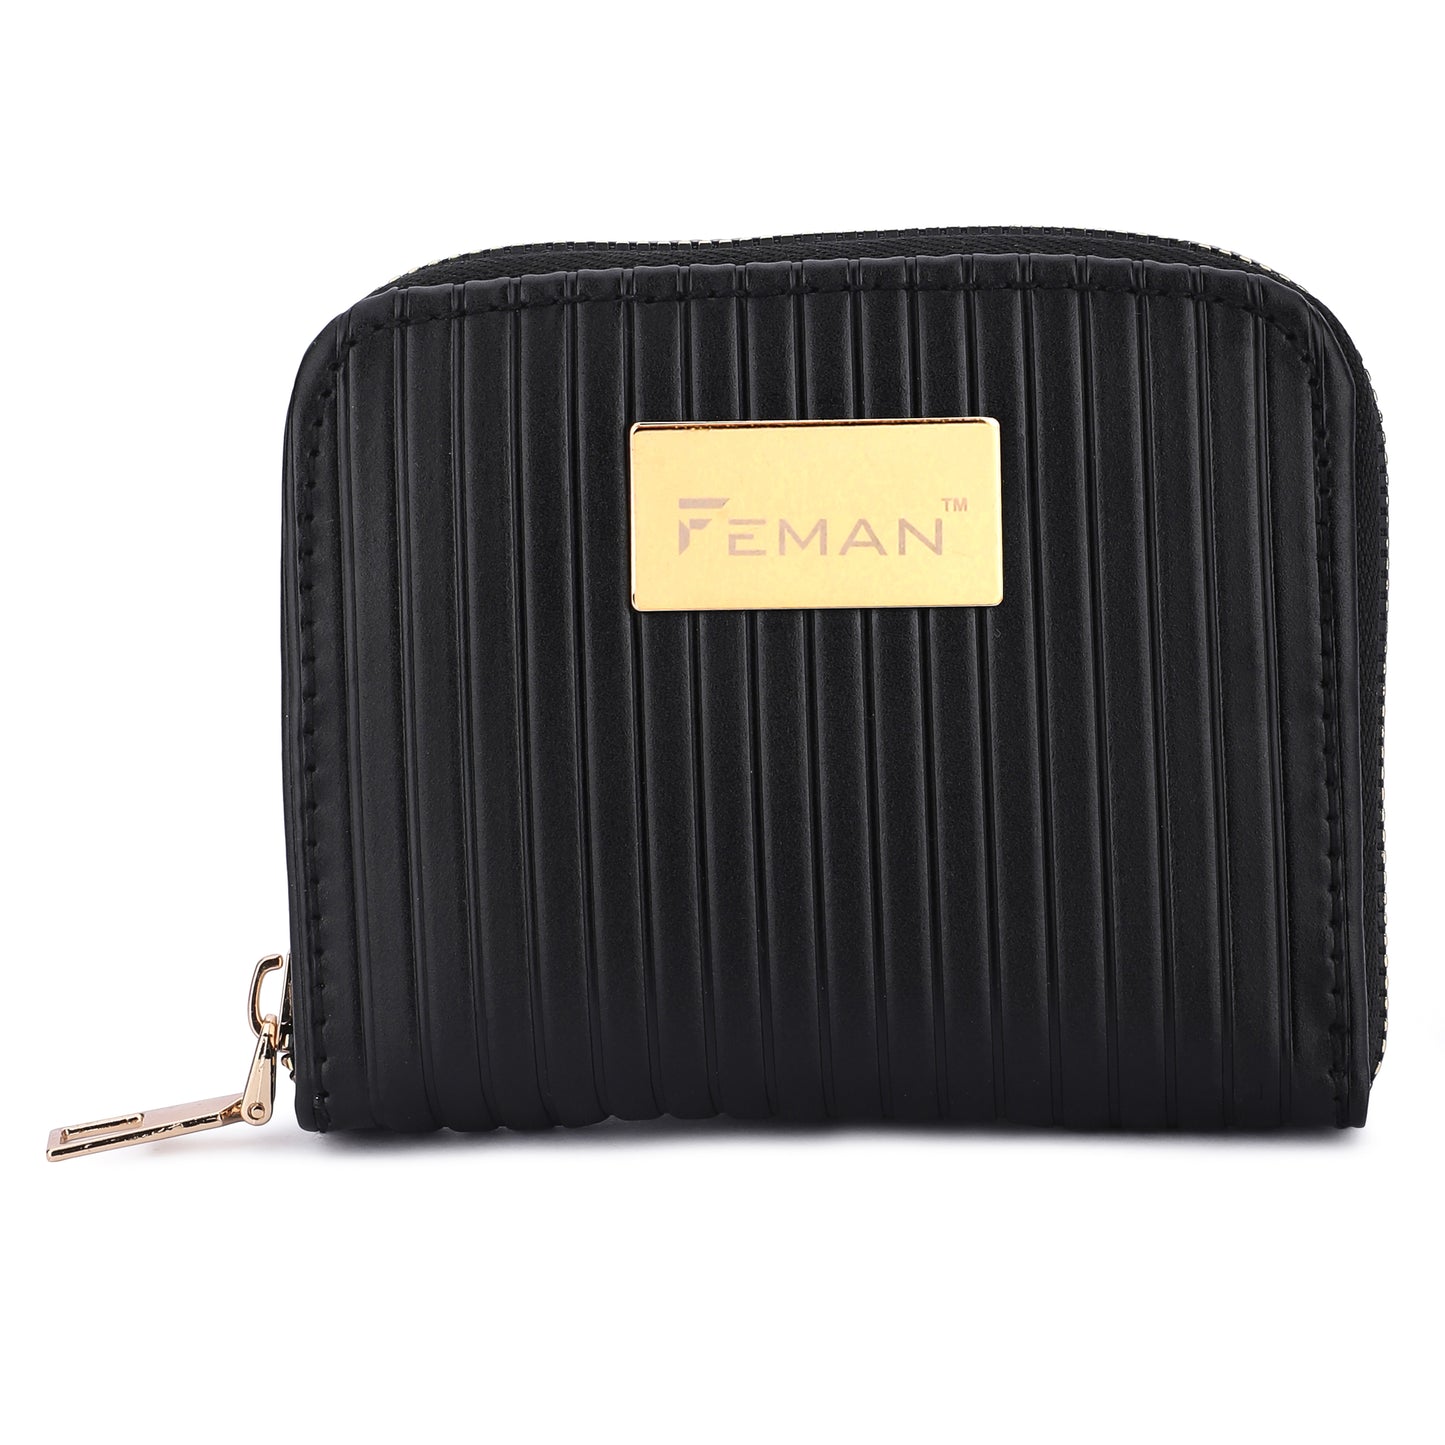 Feman Pixie Pocket Wallets - Black